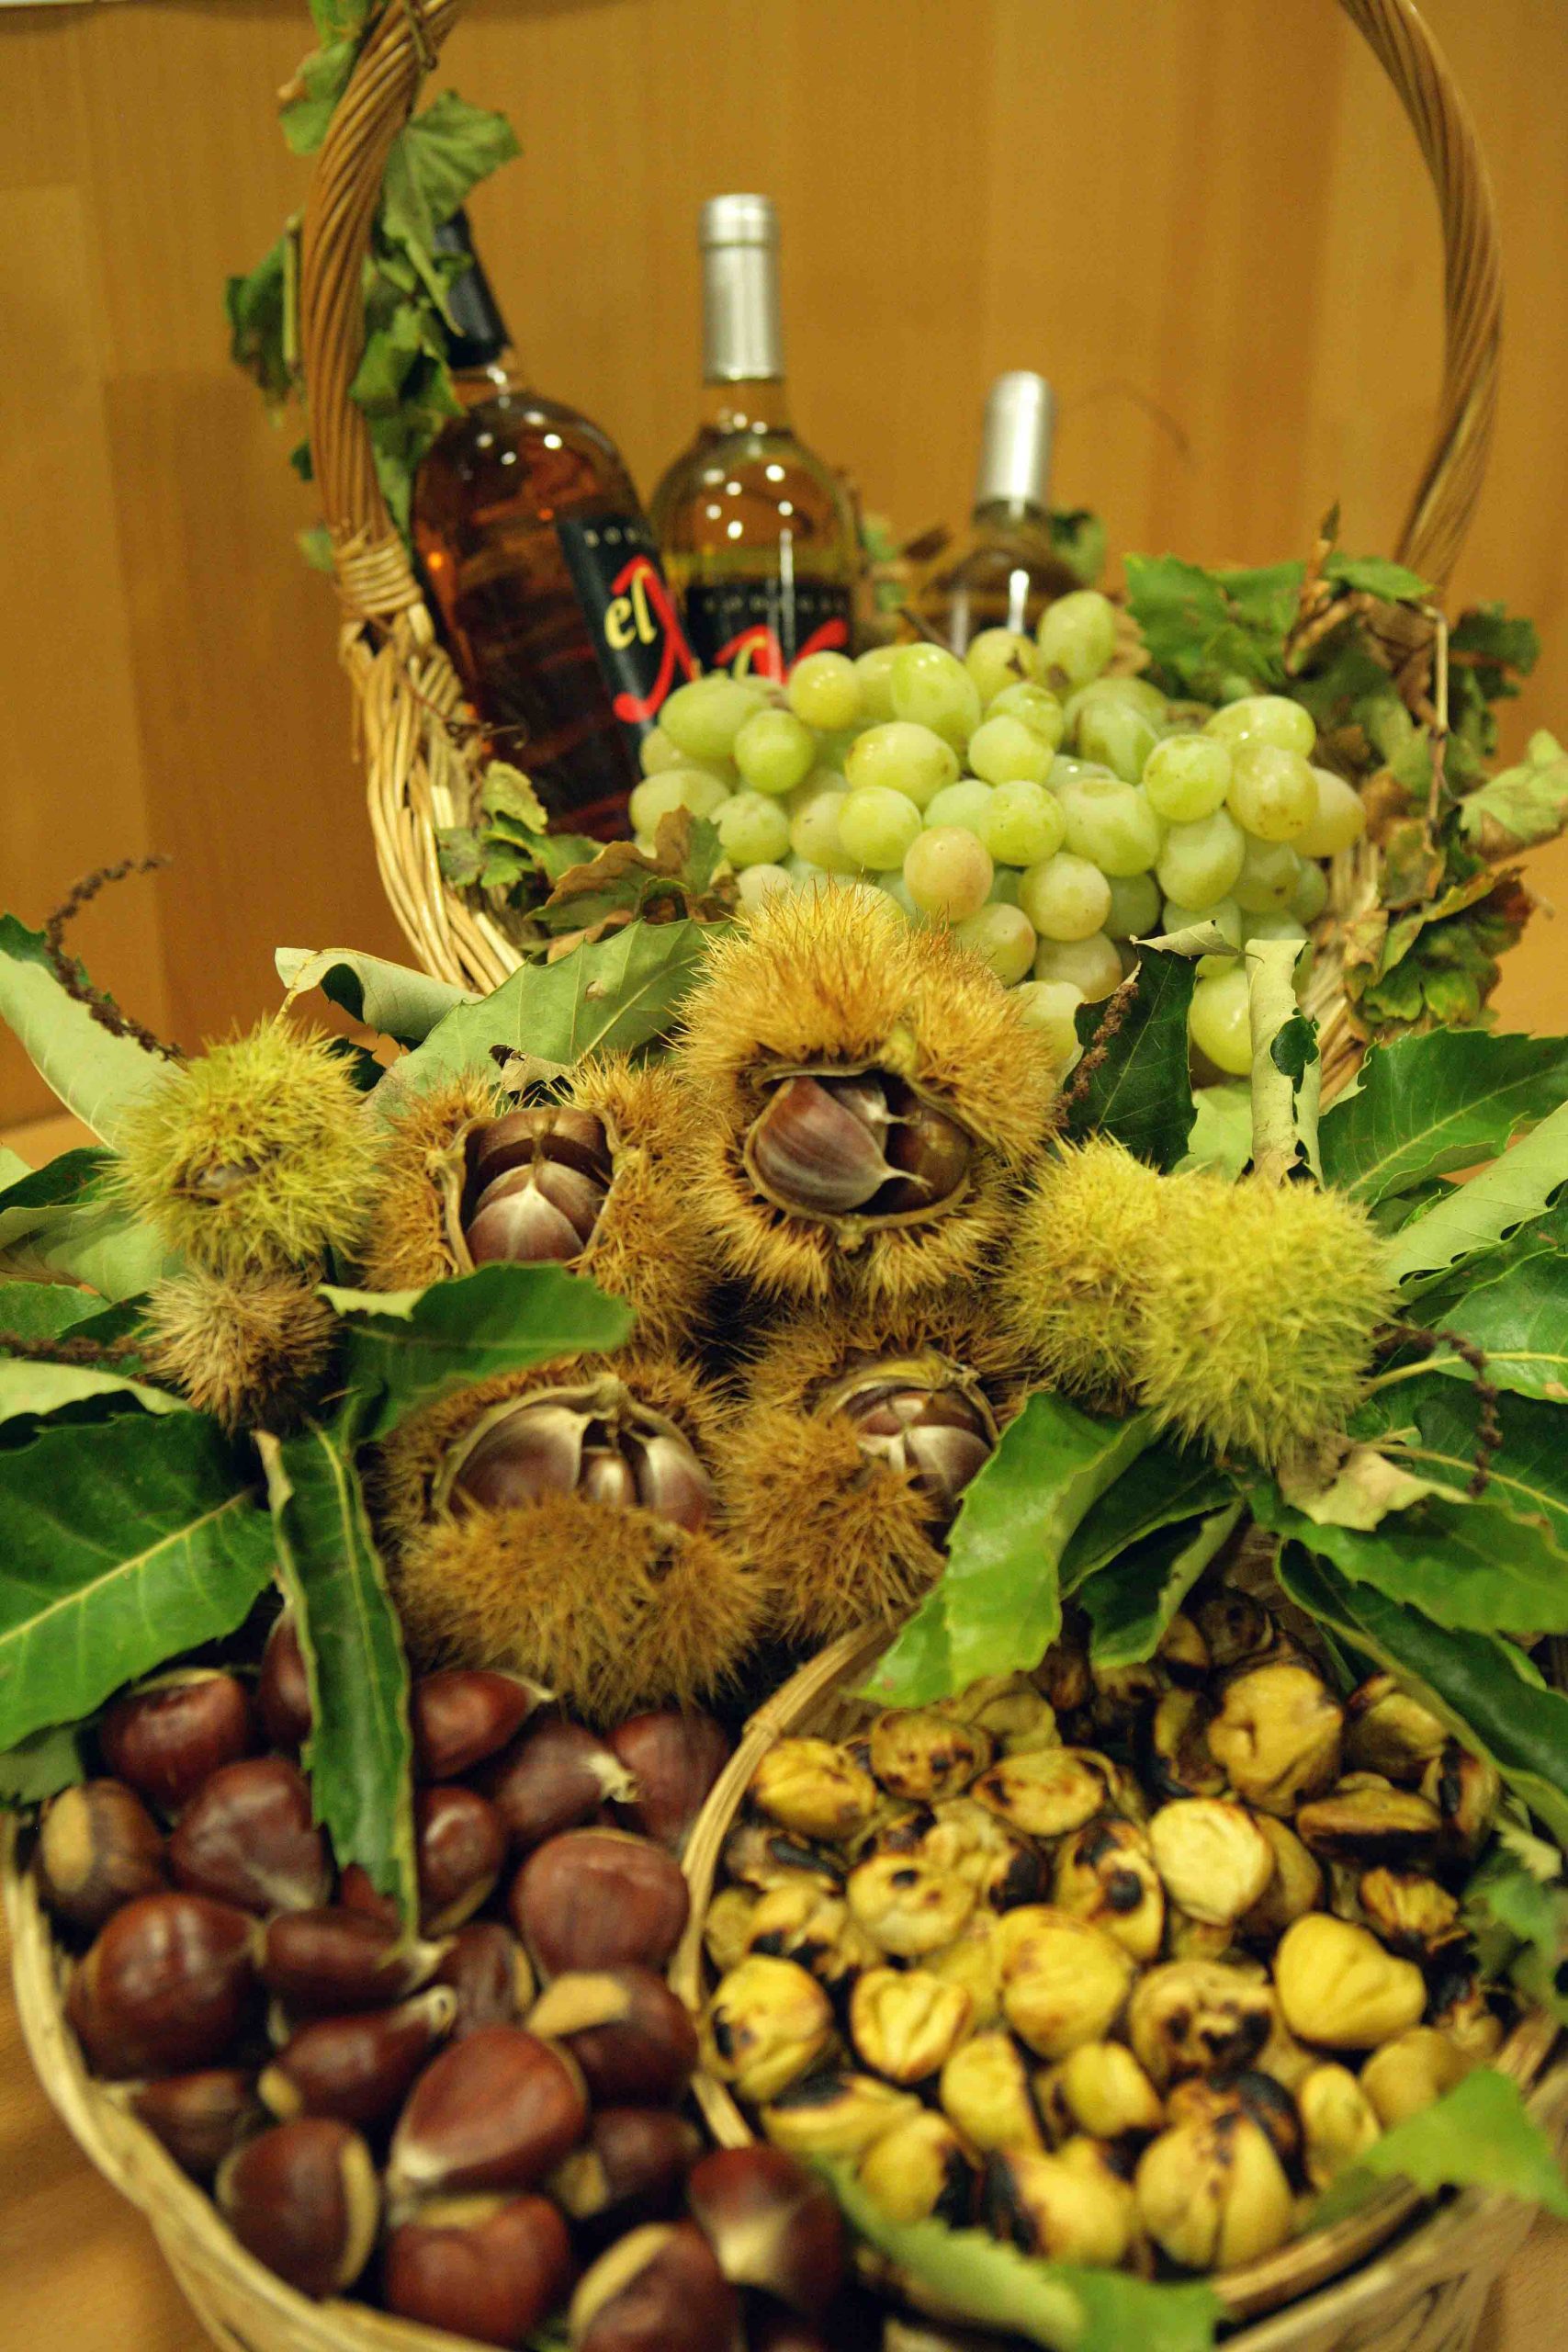 Chestnut and wine festival, Yunquera